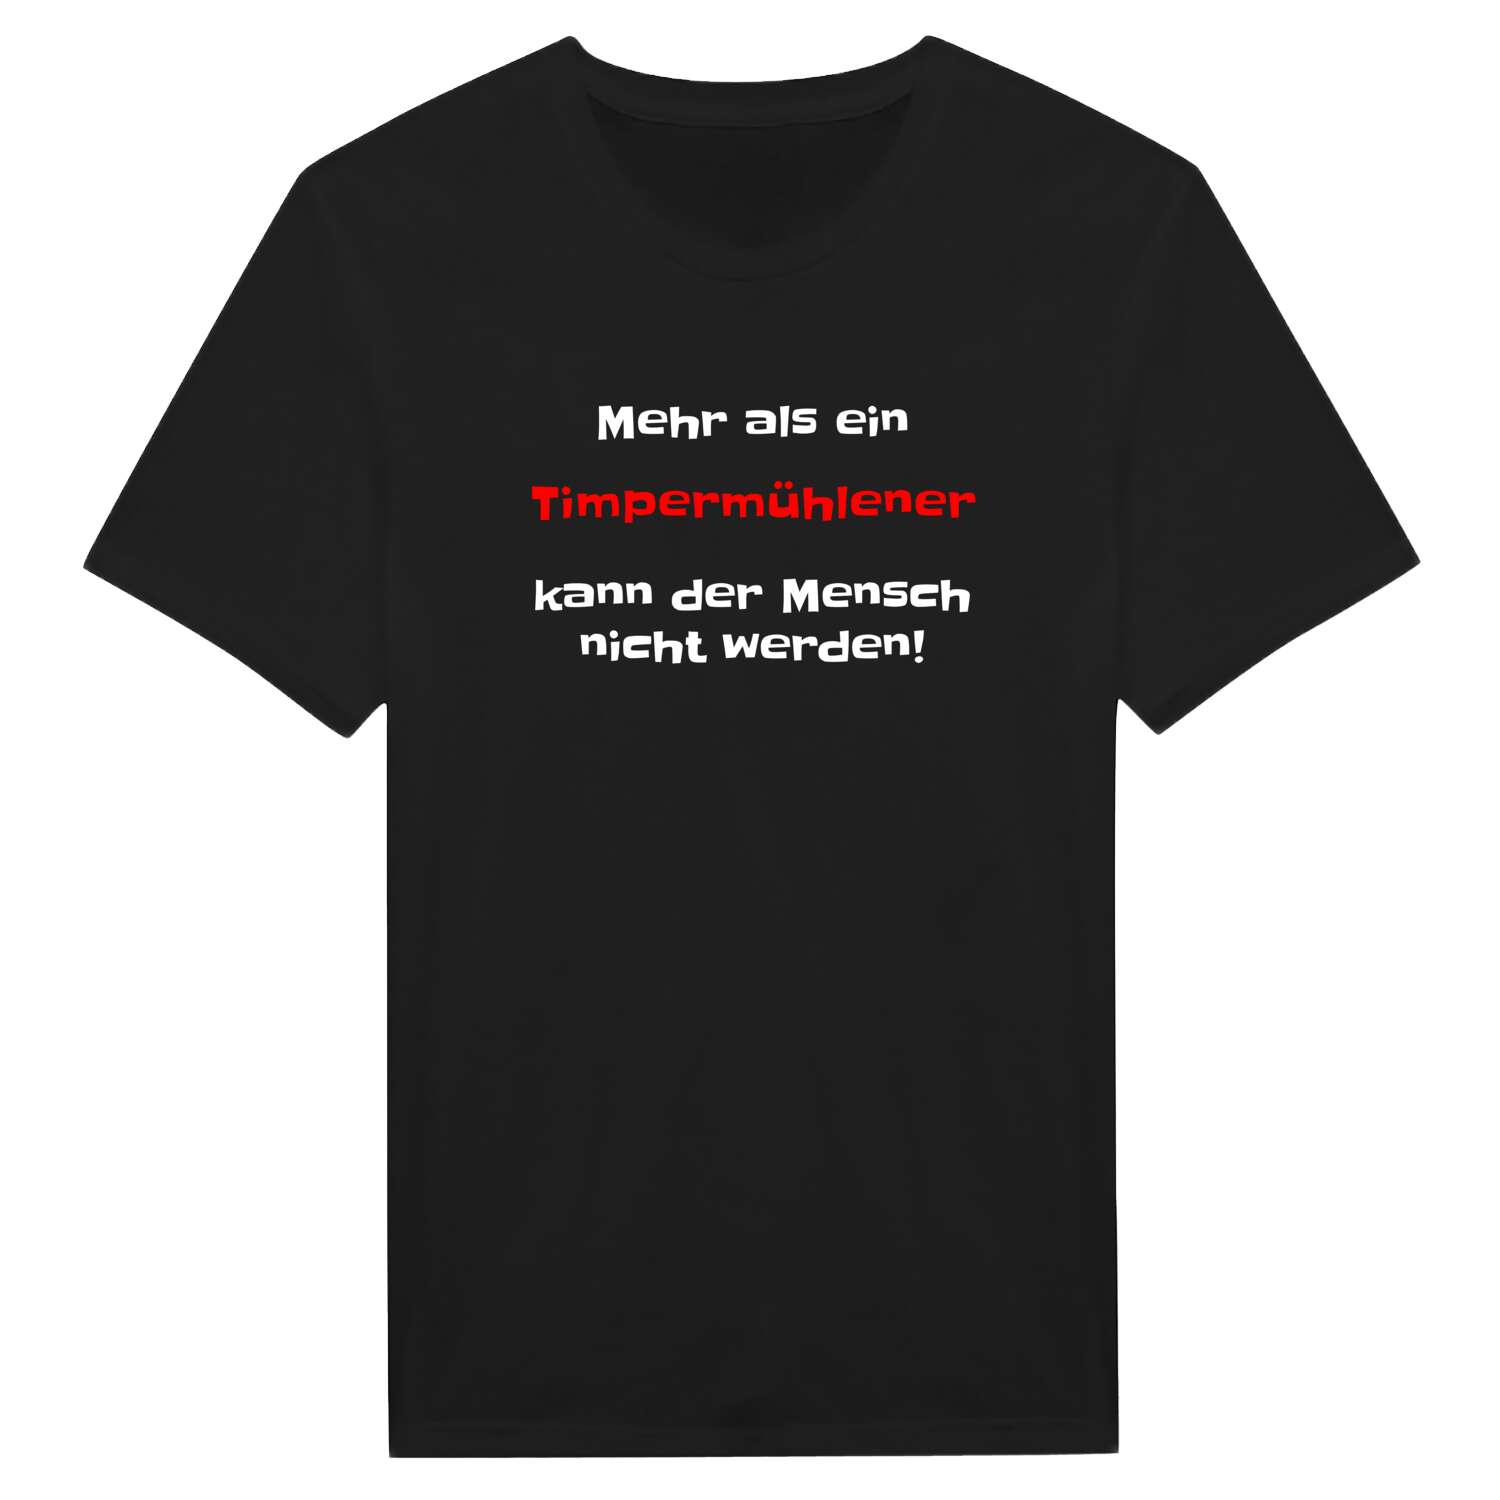 Timpermühle T-Shirt »Mehr als ein«